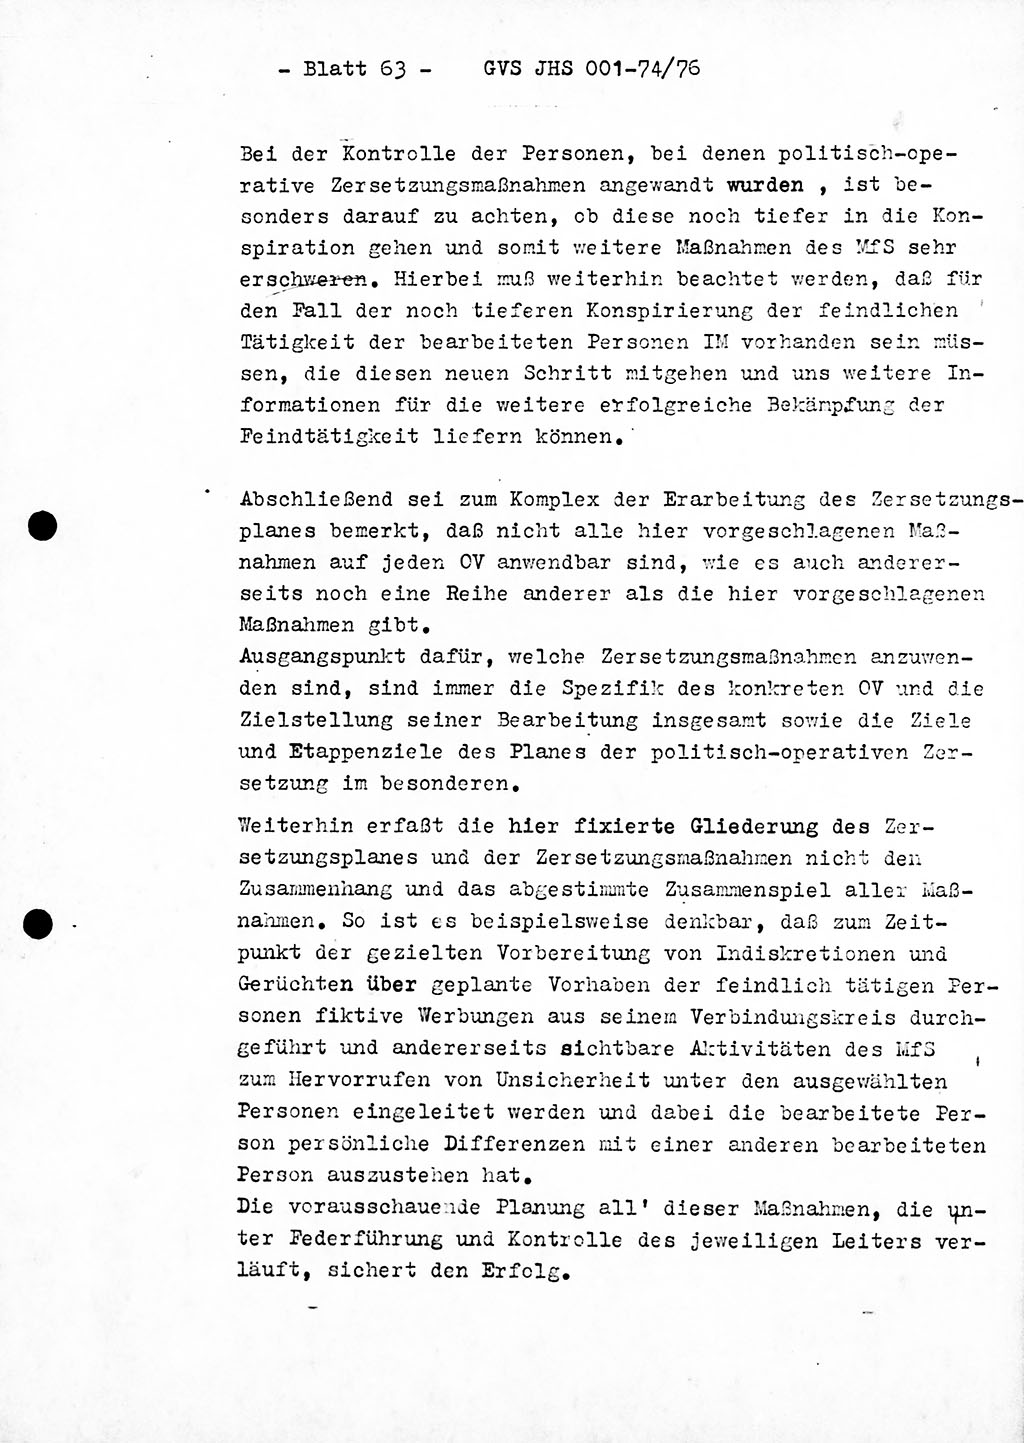 Diplomarbeit Hauptmann Joachim Tischendorf (HA ⅩⅩ), Ministerium für Staatssicherheit (MfS) der Deutschen Demokratischen Republik (DDR), Juristische Hochschule (JHS), Geheime Verschlußsache (GVS) 001-74/76, Potsdam 1976, Seite 63 (Dipl.-Arb. MfS DDR JHS GVS 001-74/76 1976, S. 63)